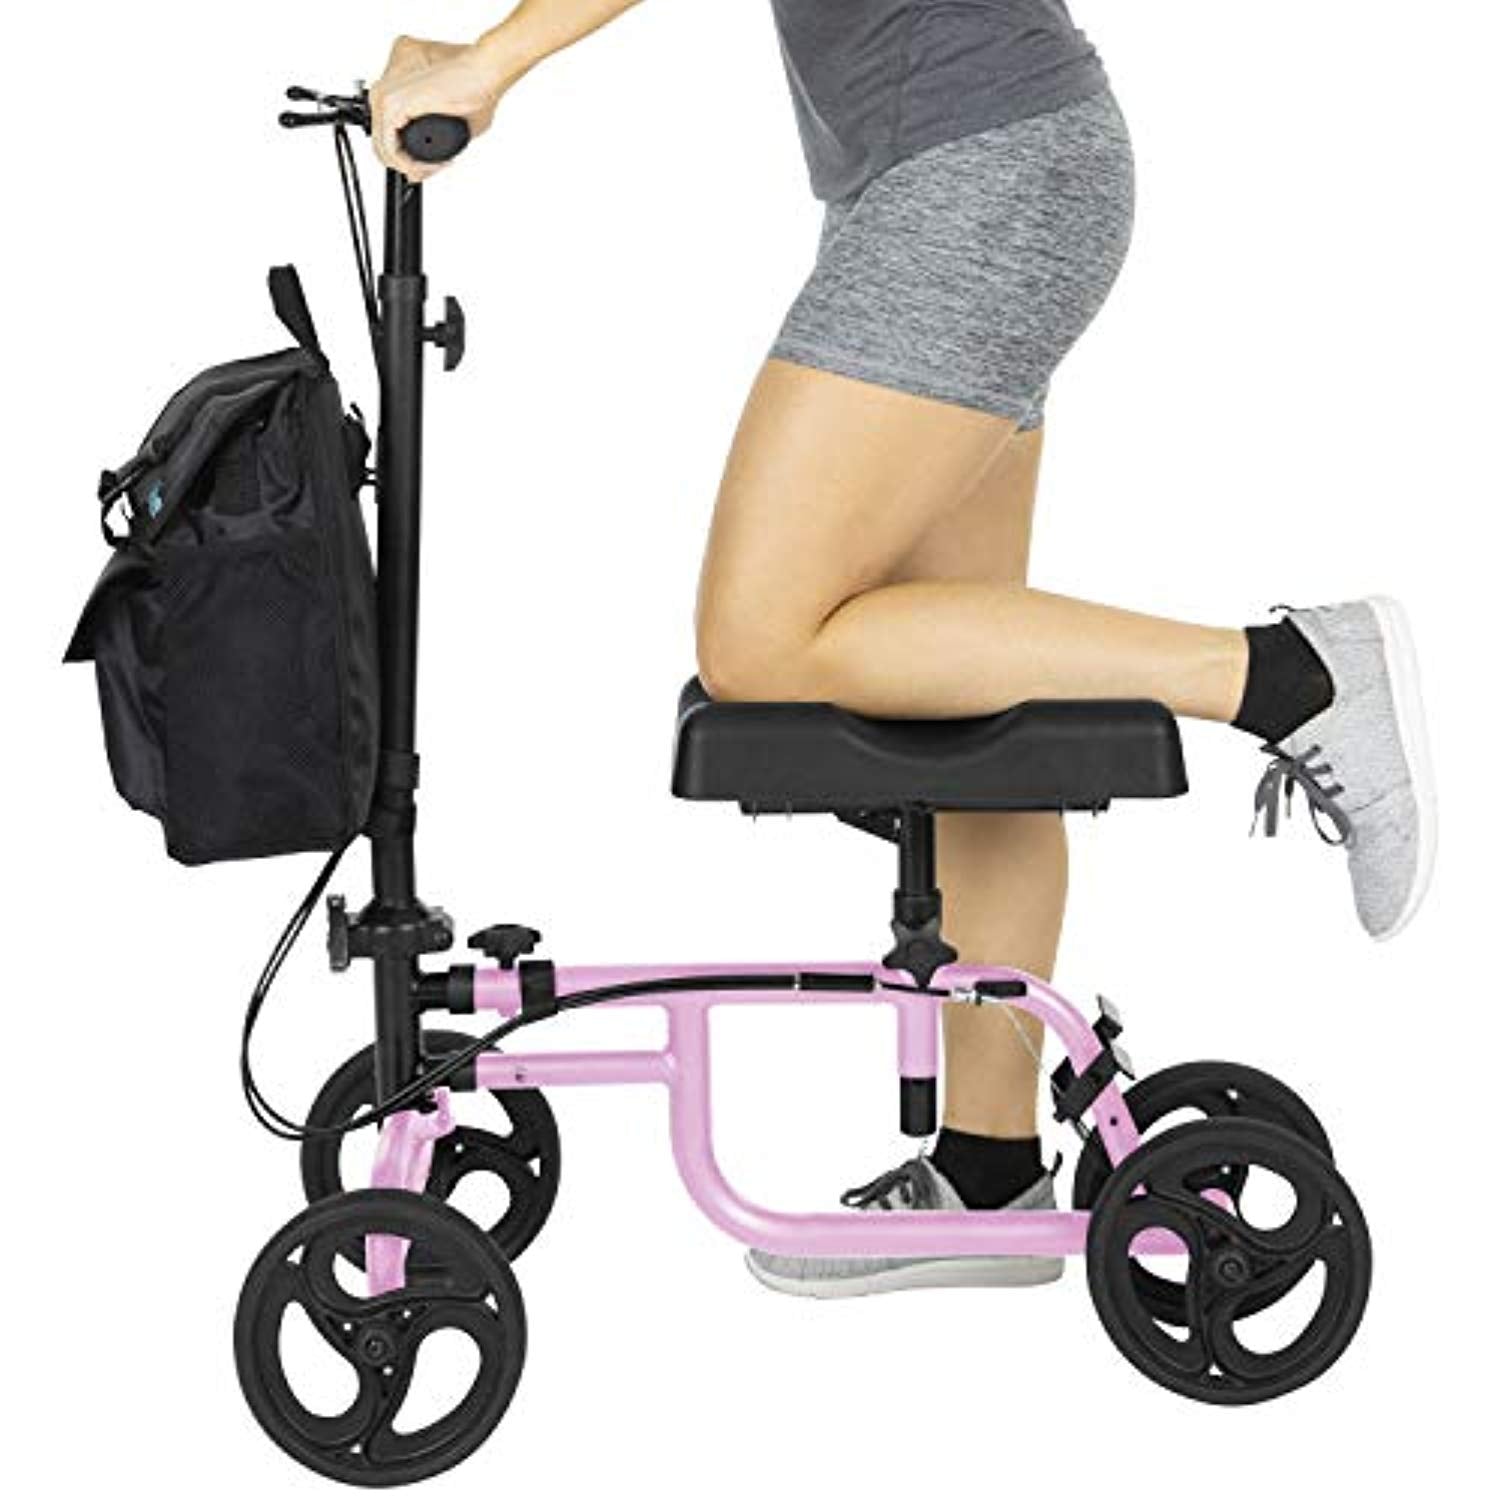 Knee Walker - Steerable Scooter For Broken Leg, Foot, Ankle Injuries -